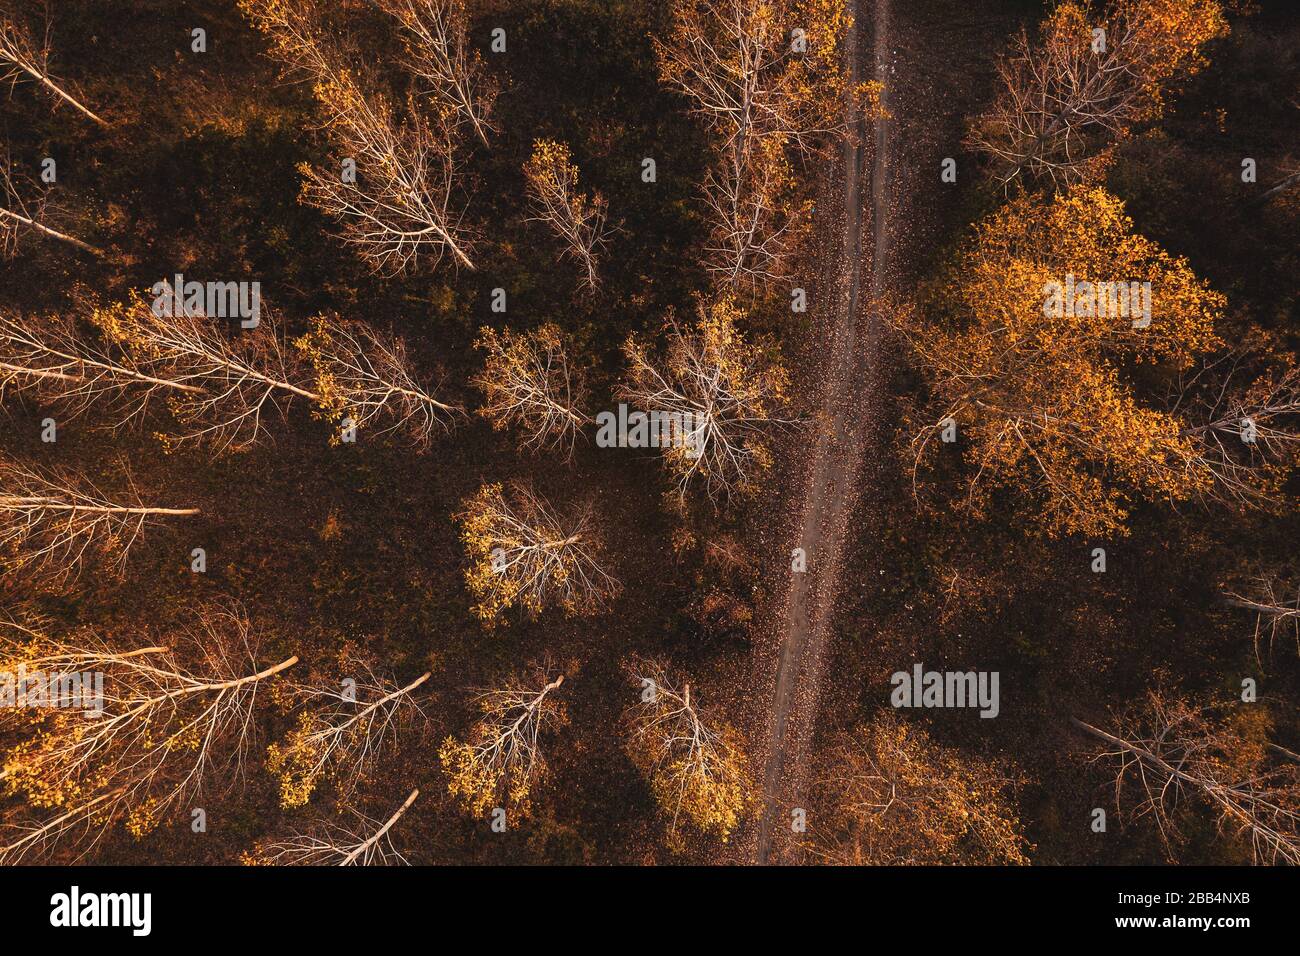 Vuoto strada sterrata attraverso cottonwood albero autumnal foresta, vista dall'alto fotografia aerea drone Foto Stock